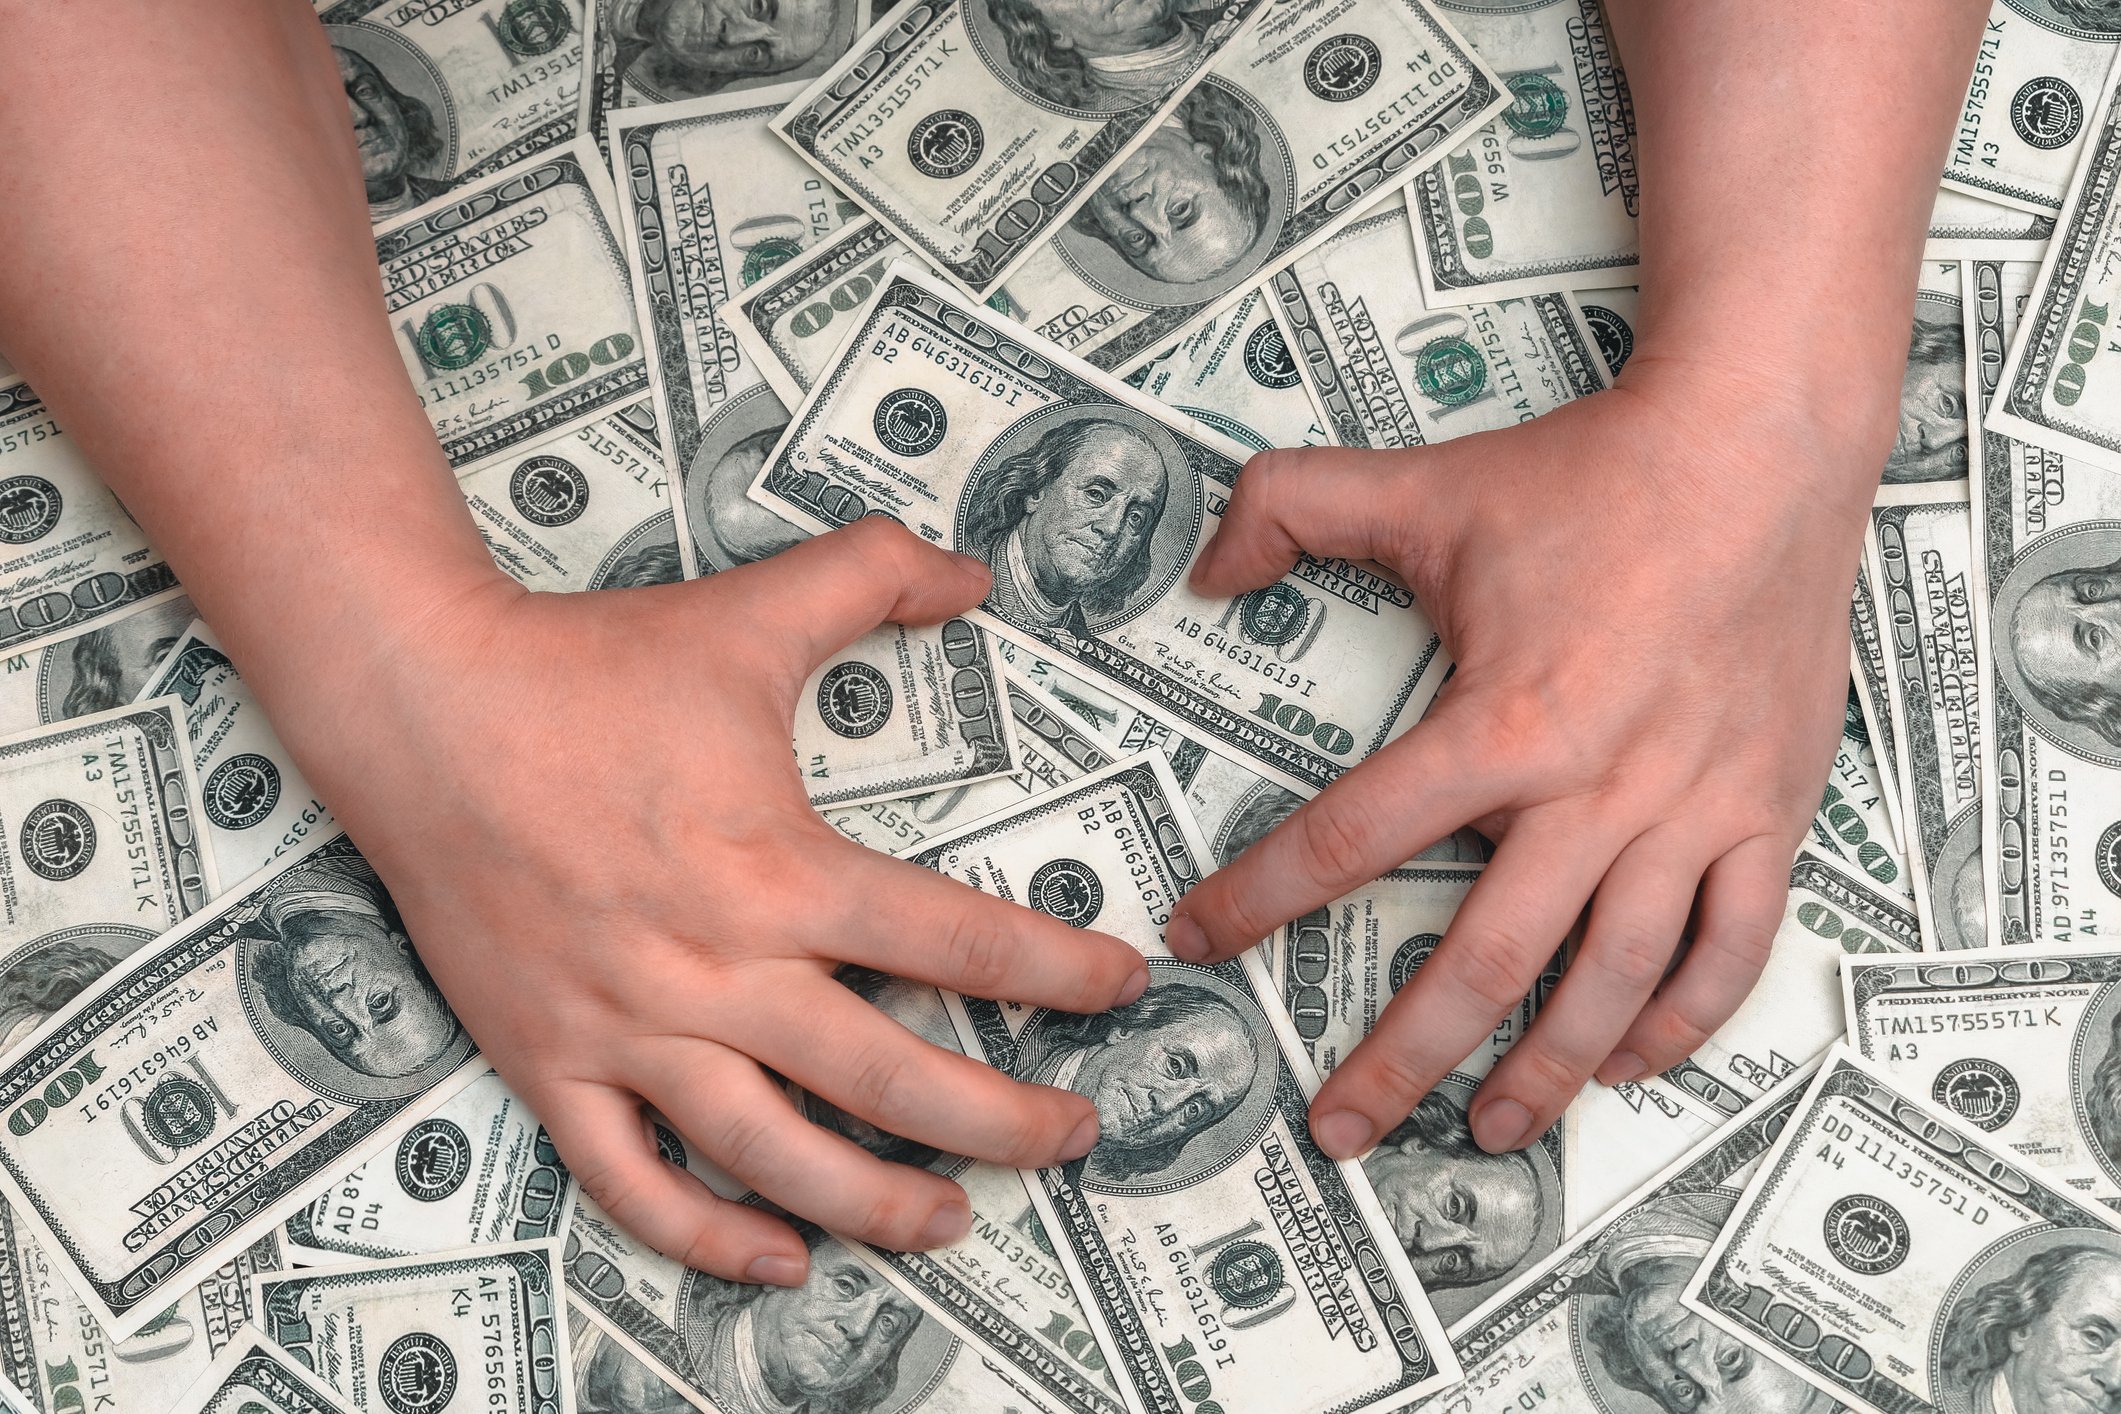 Ein Mann versucht, sich einen großen Haufen Geld von Hundert-Dollar-Scheinen zu nehmen | Quelle: Getty Images